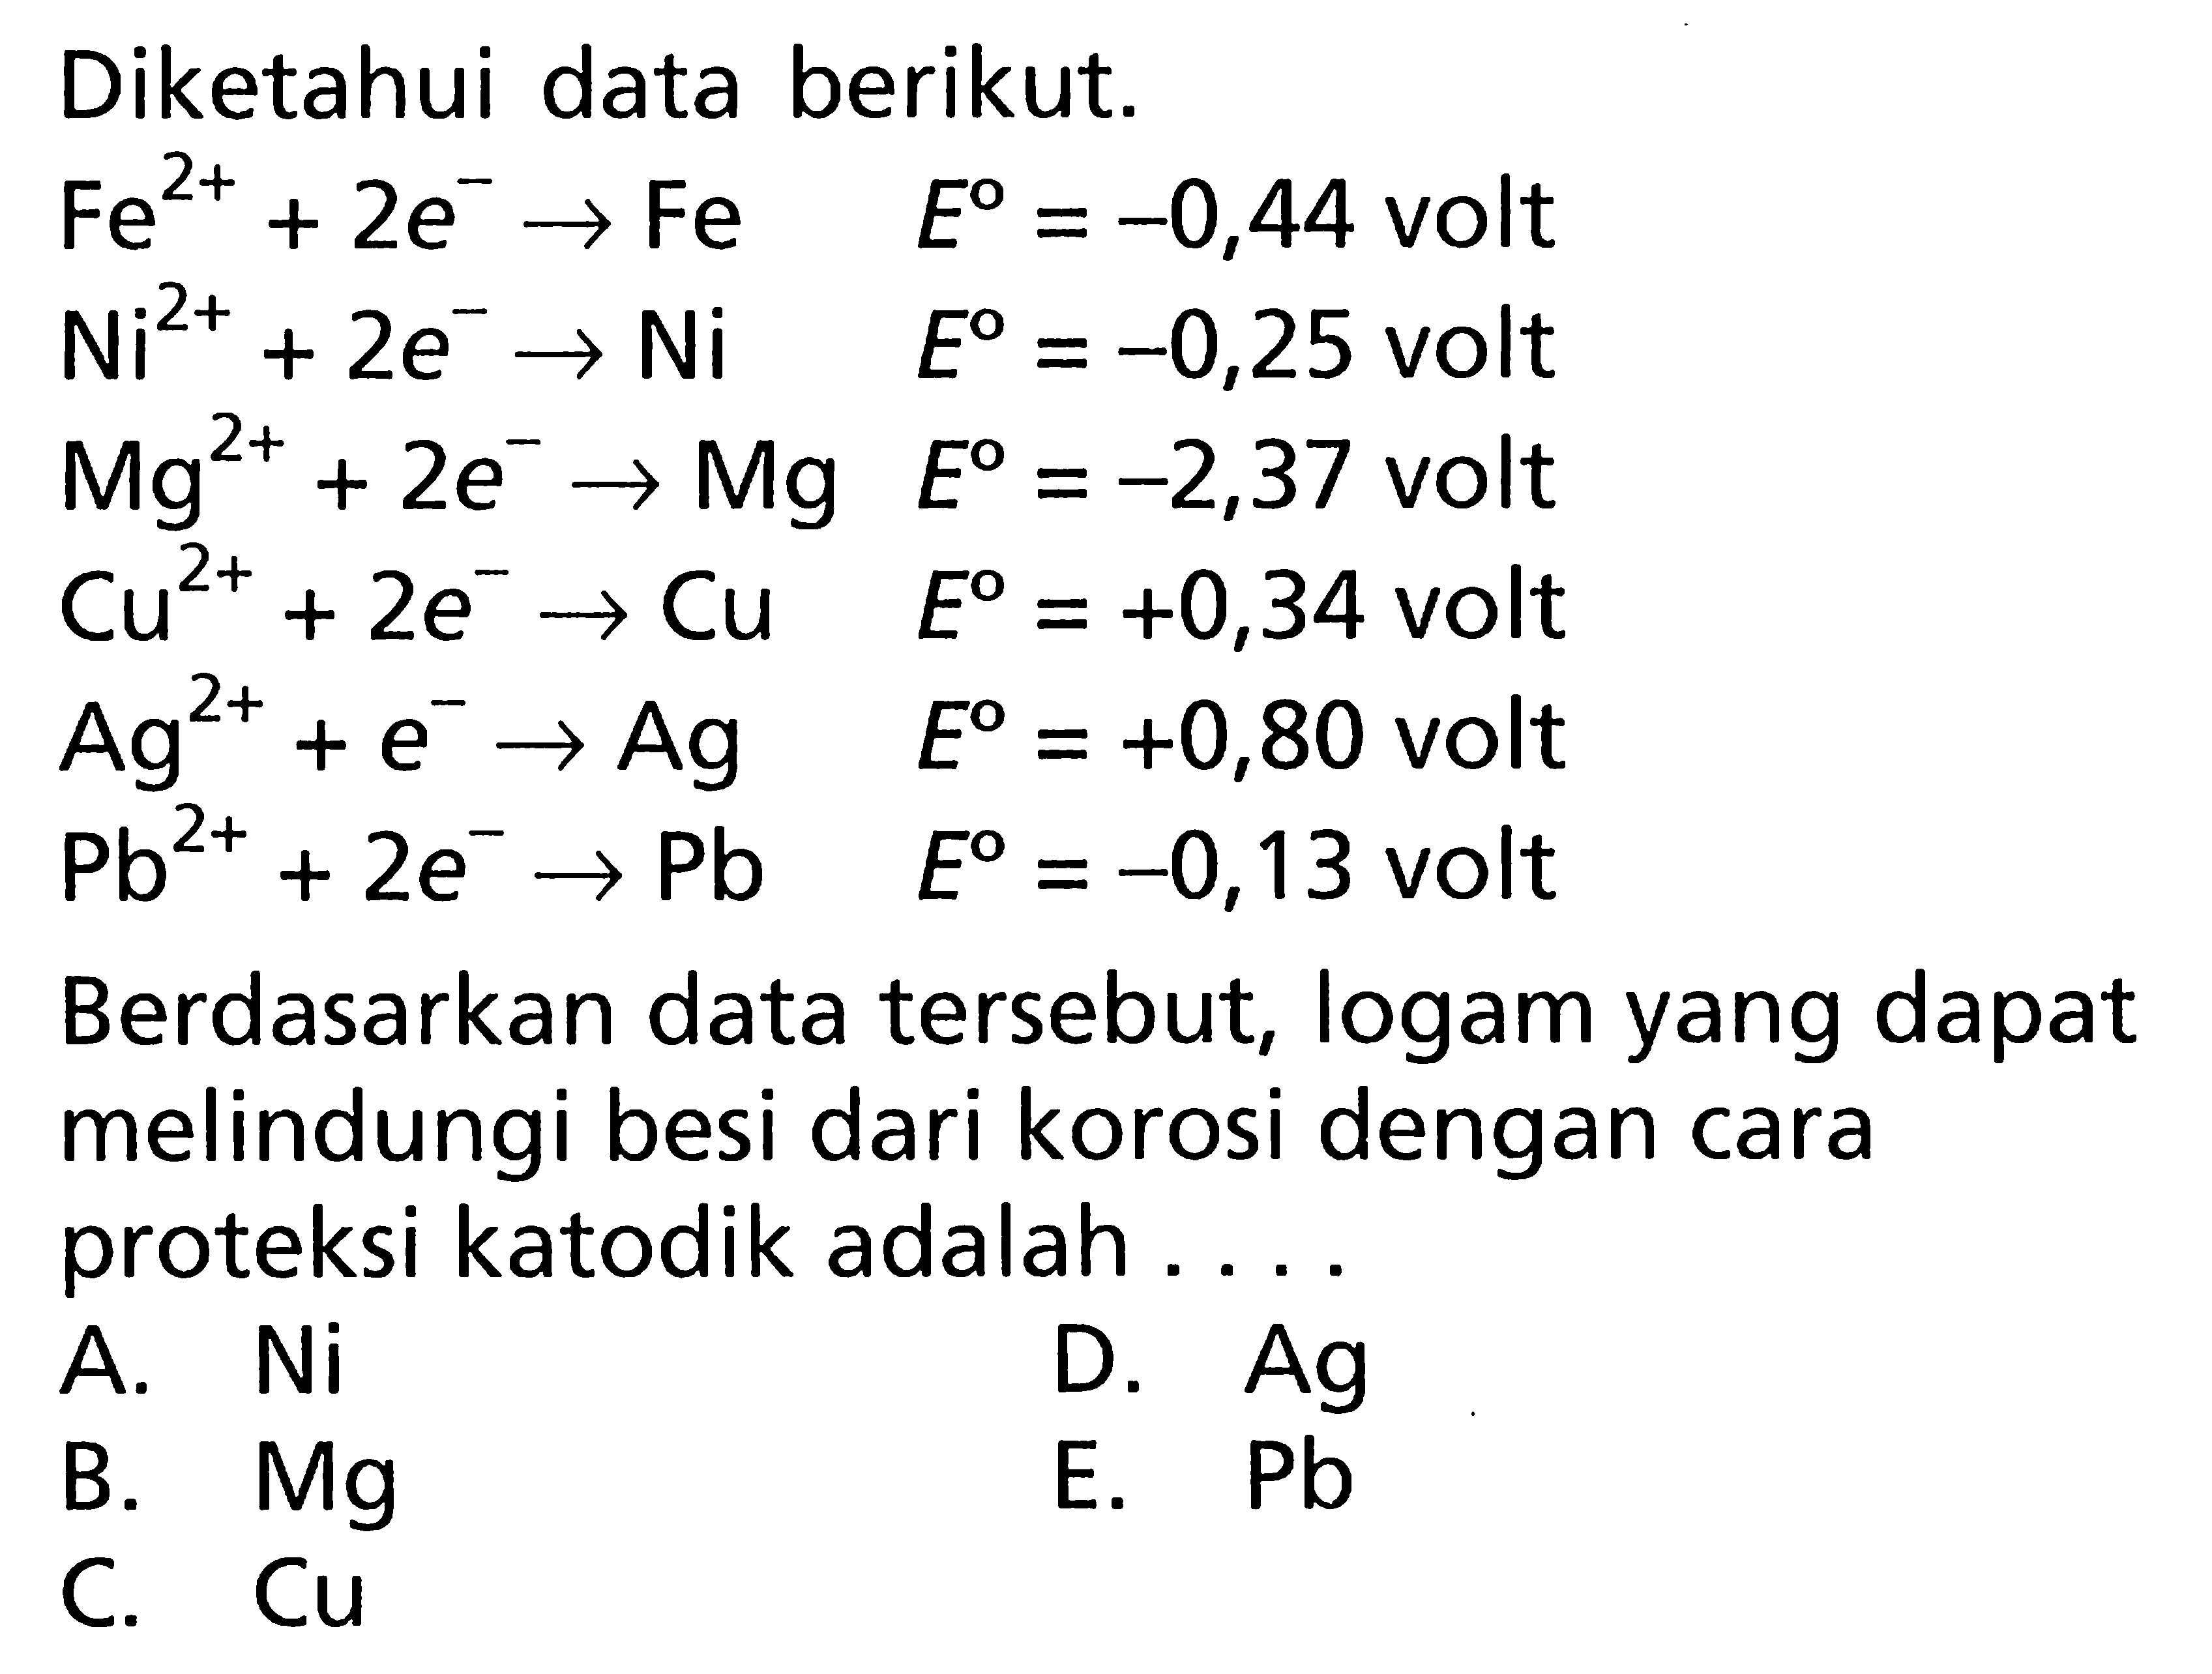 Diketahui data berikut. Fe^(2+) + 2e^- -> Fe E = -0,44 volt Ni^(2+) + 2e^- -> Ni E = -0,25 volt Mg^(2+) + 2e^- -> Mg E = -2,37 volt Cu^(2+) + 2e^- -> Cu E = +0,34 volt Ag^(2+) + 2e^- -> Ag E = +0,80 volt Pb^(2+) + 2e^- -> Pb E = -0,13 volt Berdasarkan data tersebut, logam yang dapat melindungi besi dari korosi dengan cara proteksi katodik adalah ....